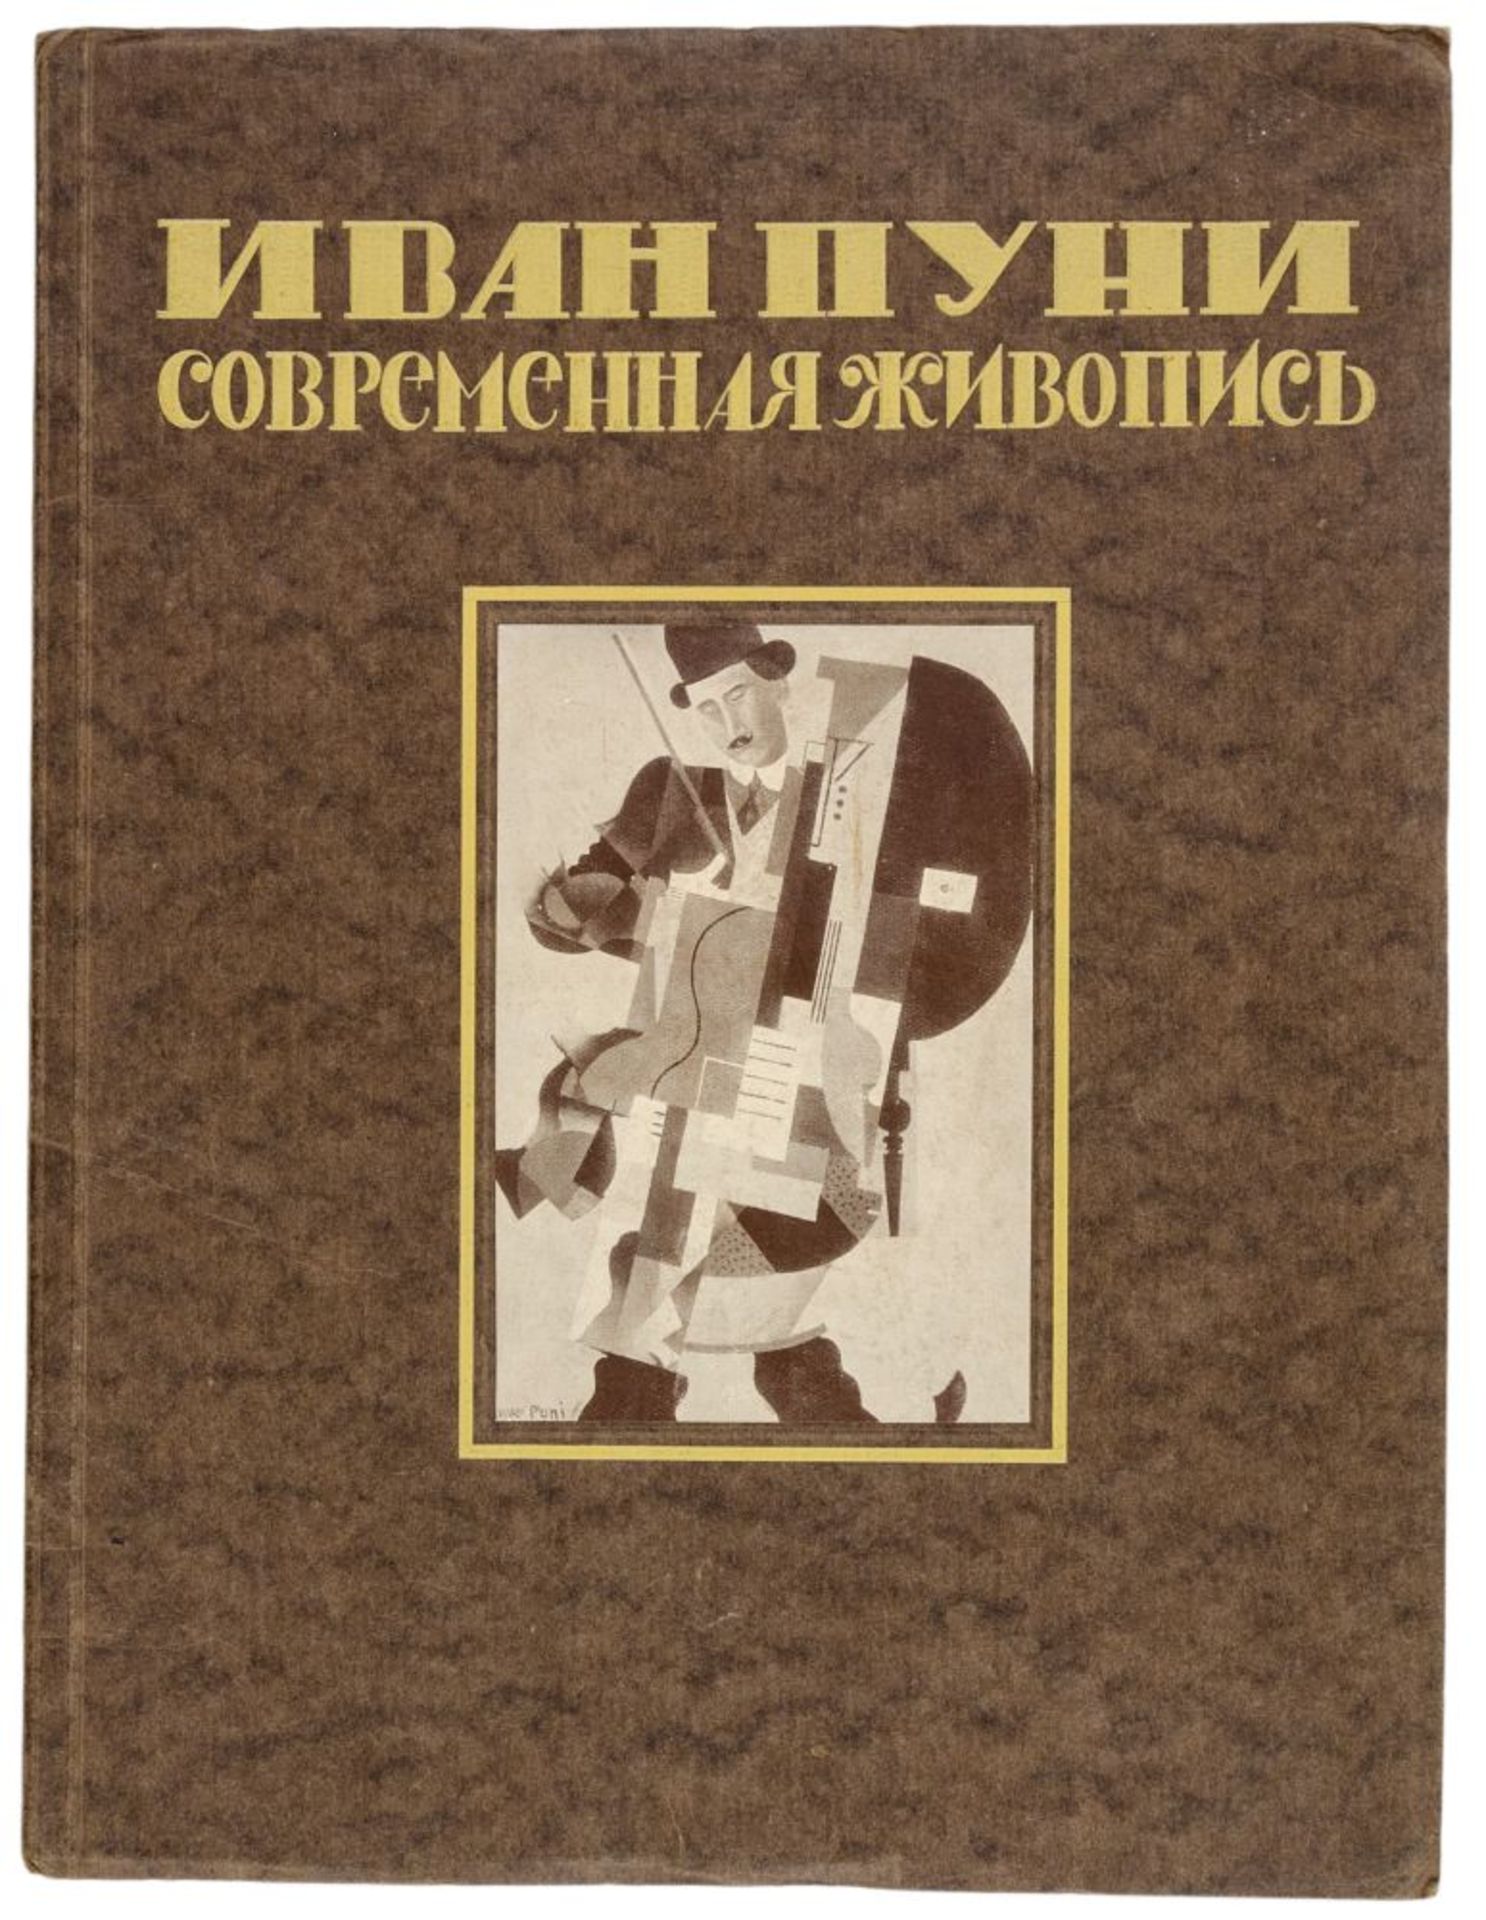 Puni, Ivan A. Sovremennaya zhivopis'. (Moderne Malerei). Mit dem "Synthetischen Musiker" des